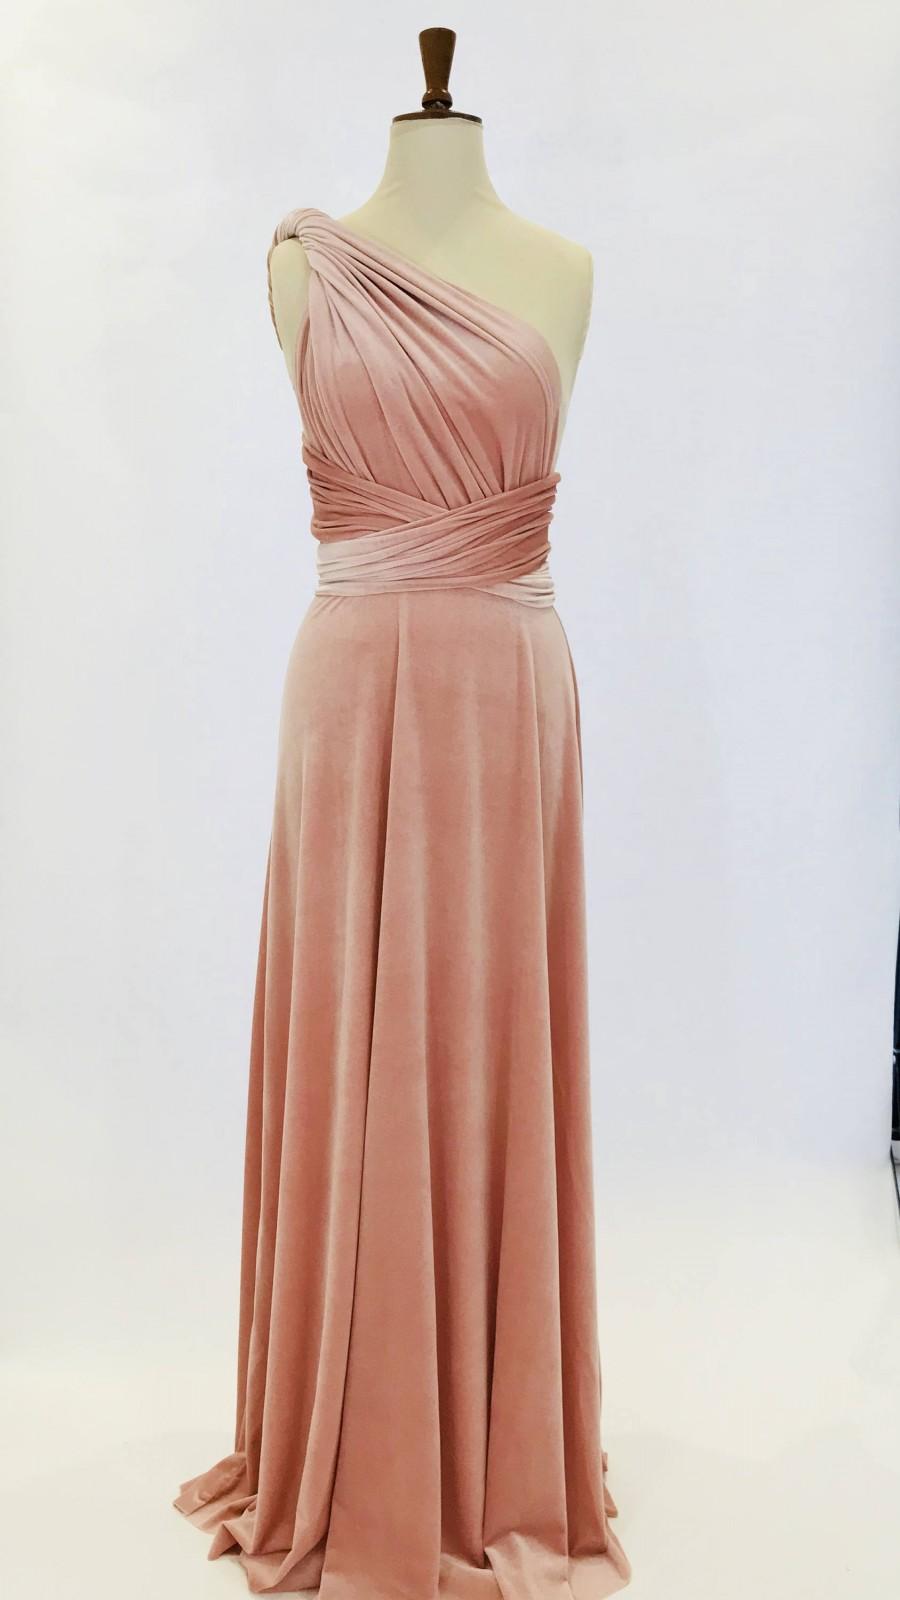 Mariage - Blush pink velvet dress, infinity dress, bridesmaid dress, prom dress, multiway dress, long dress, evening dress, convertible dress